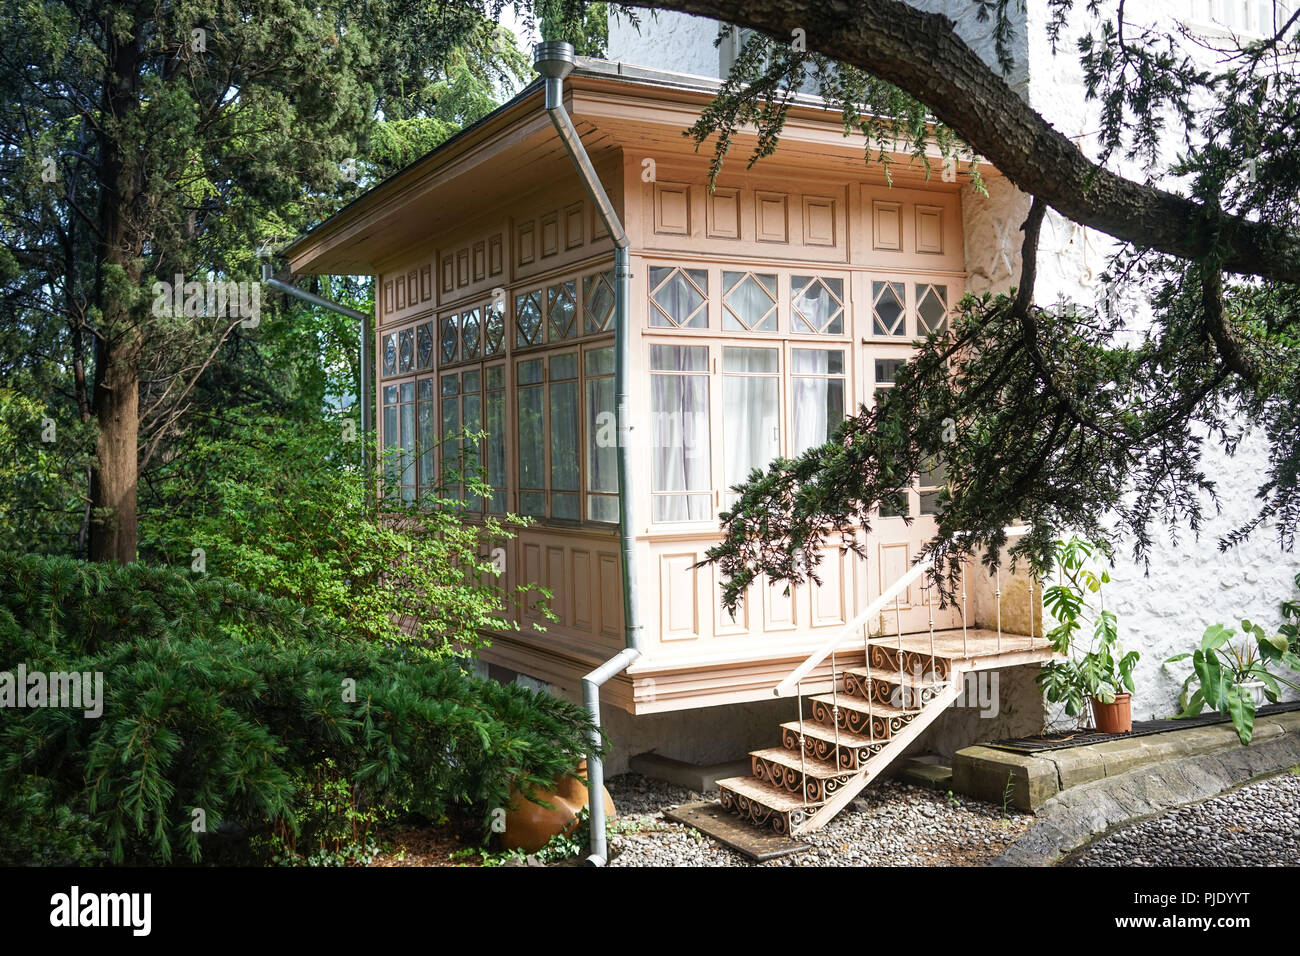 Ingresso alla casa dal giardino attraverso una veranda in legno con grandi finestre. Foto Stock